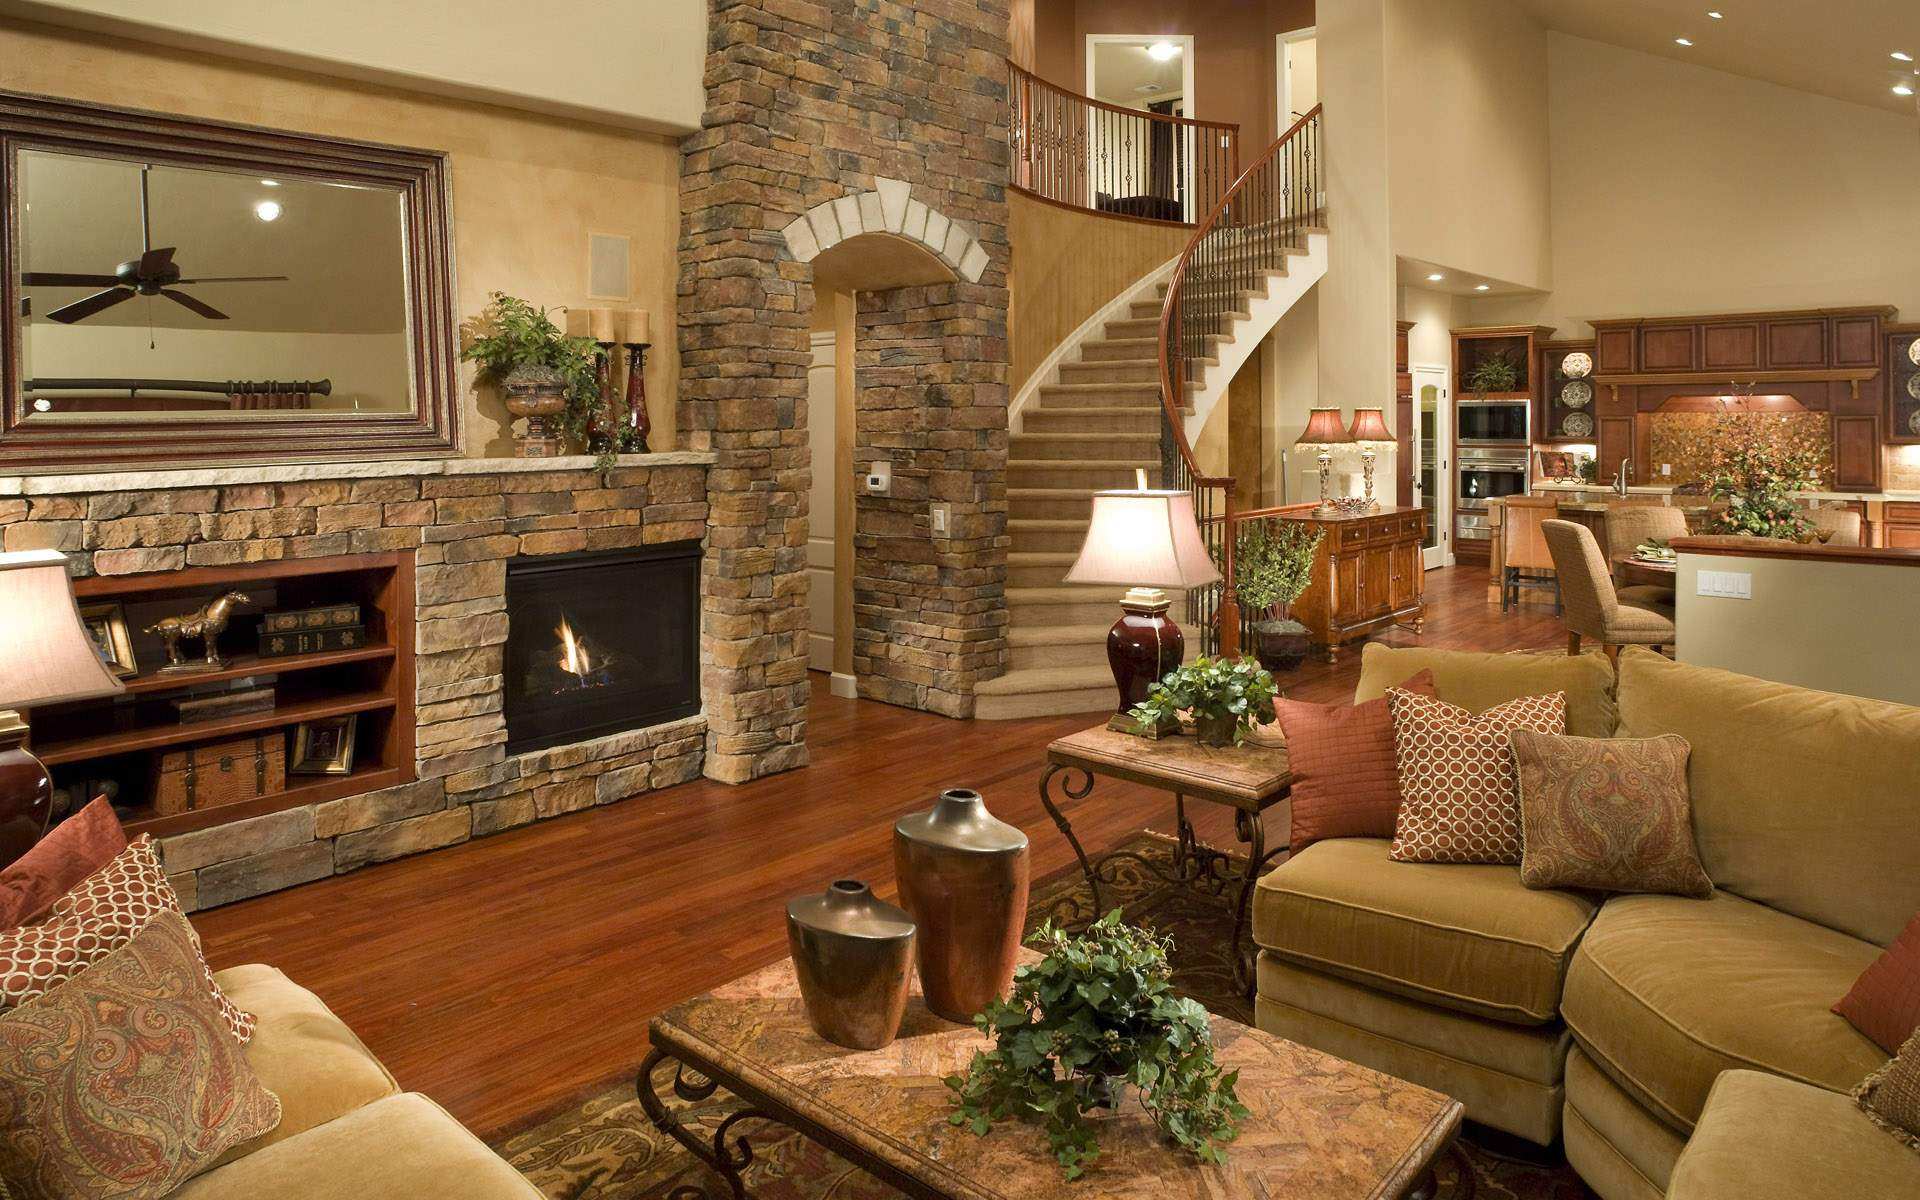 DIY Home Decorating Interior Design Idea